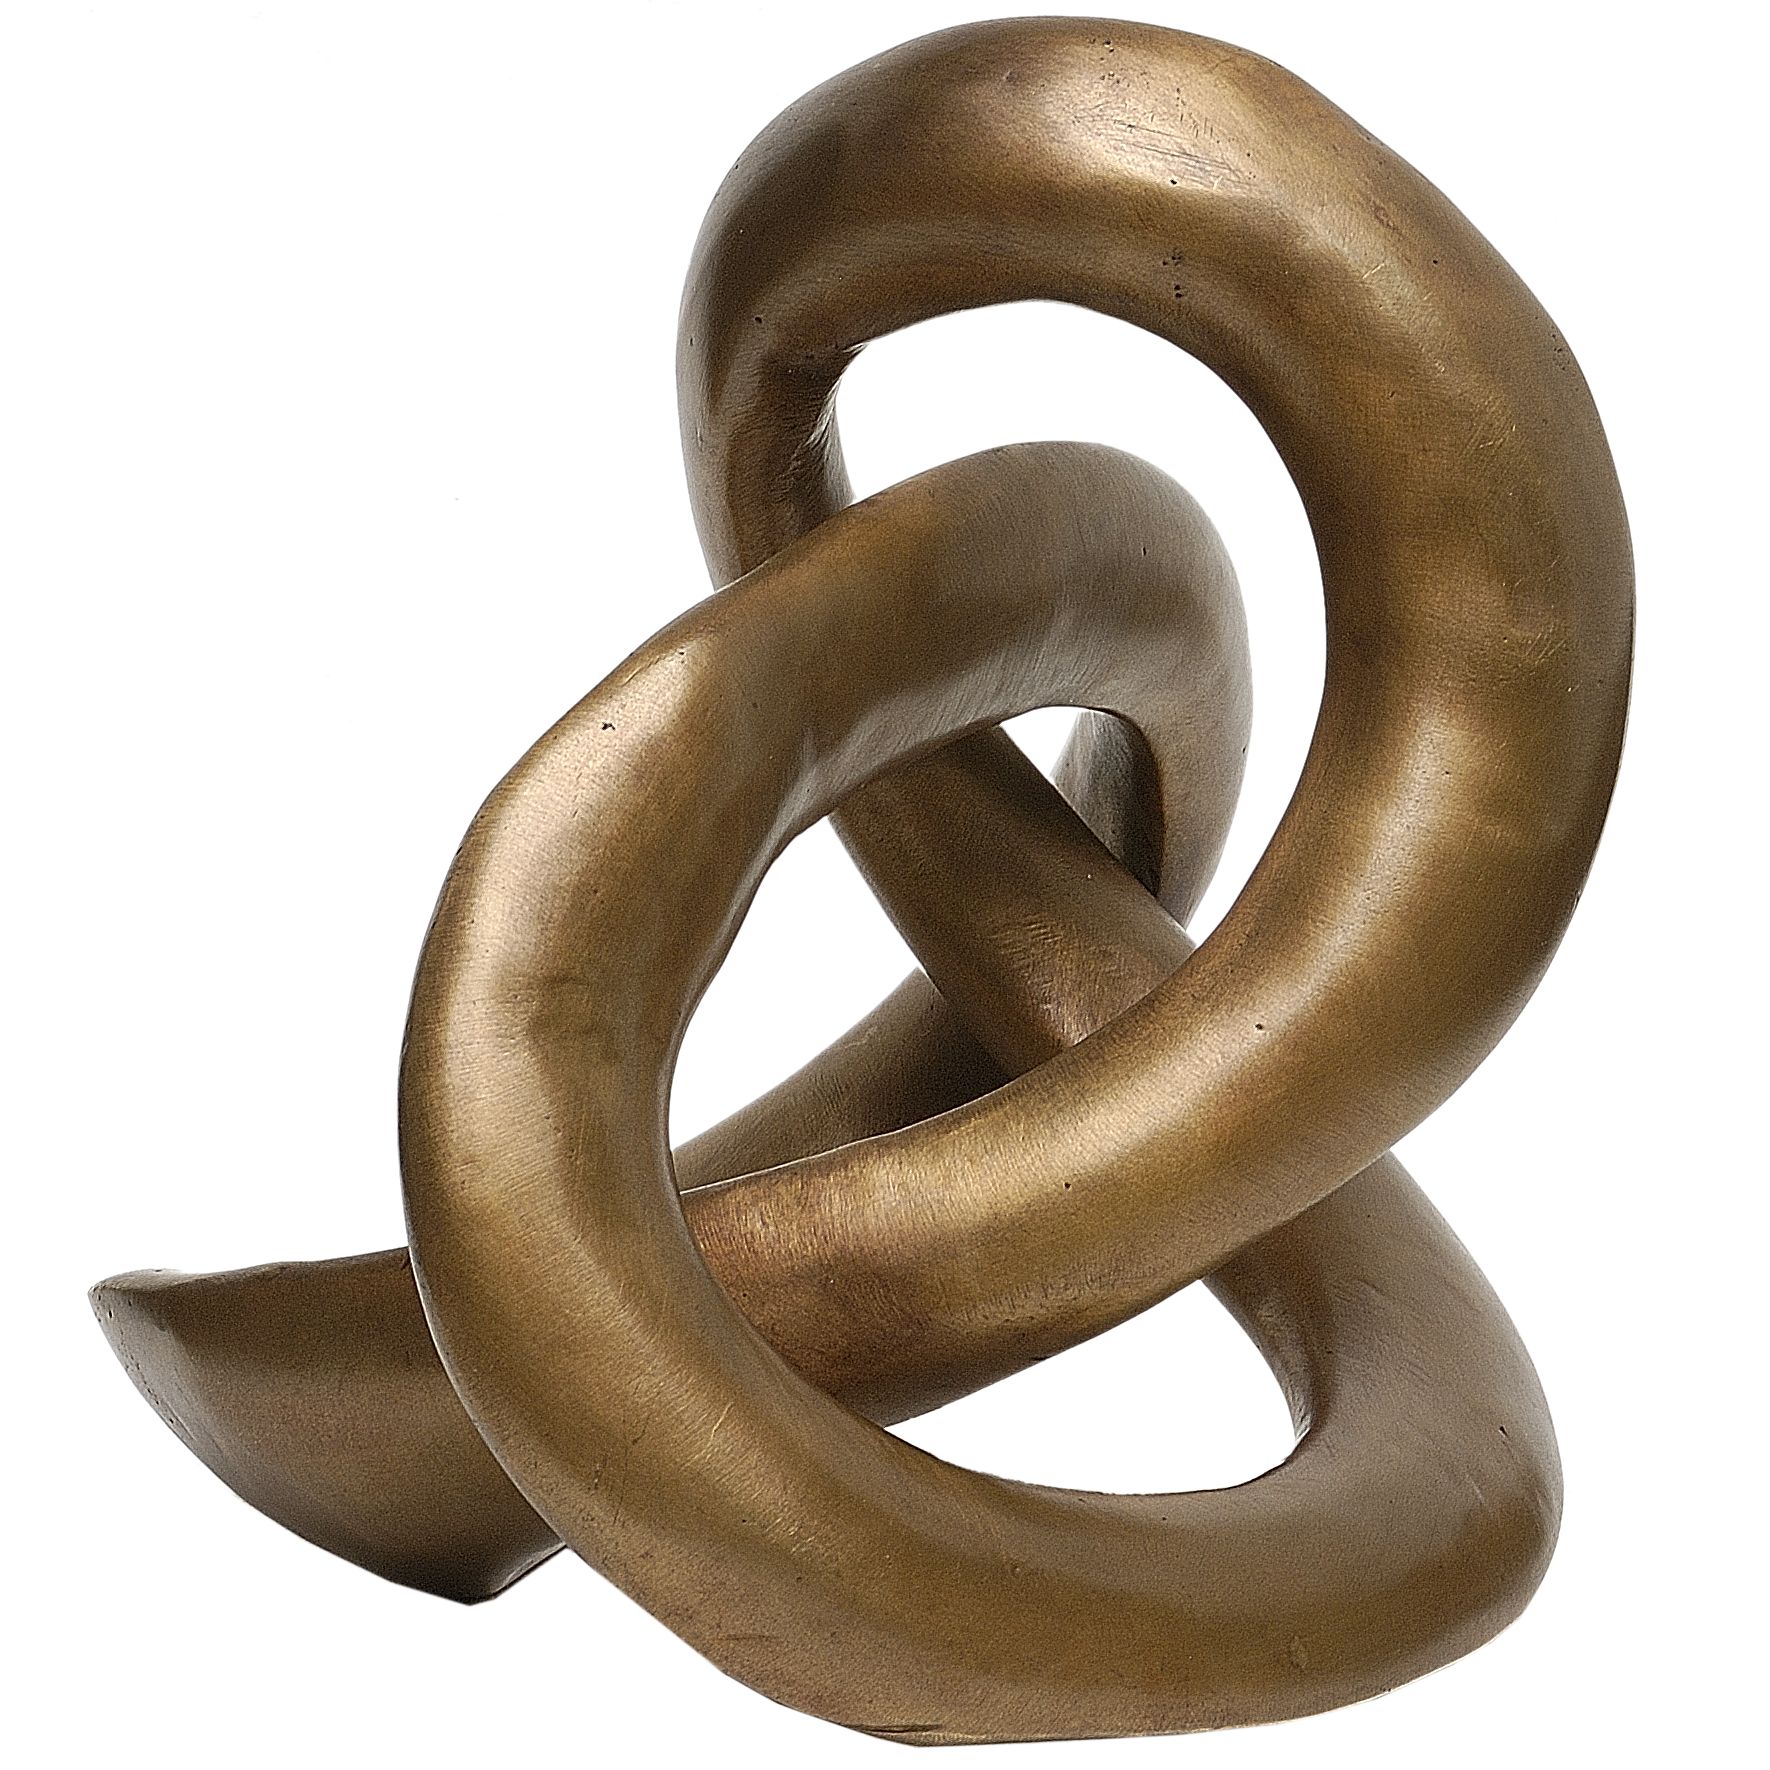 Eternal Knot Sculpture